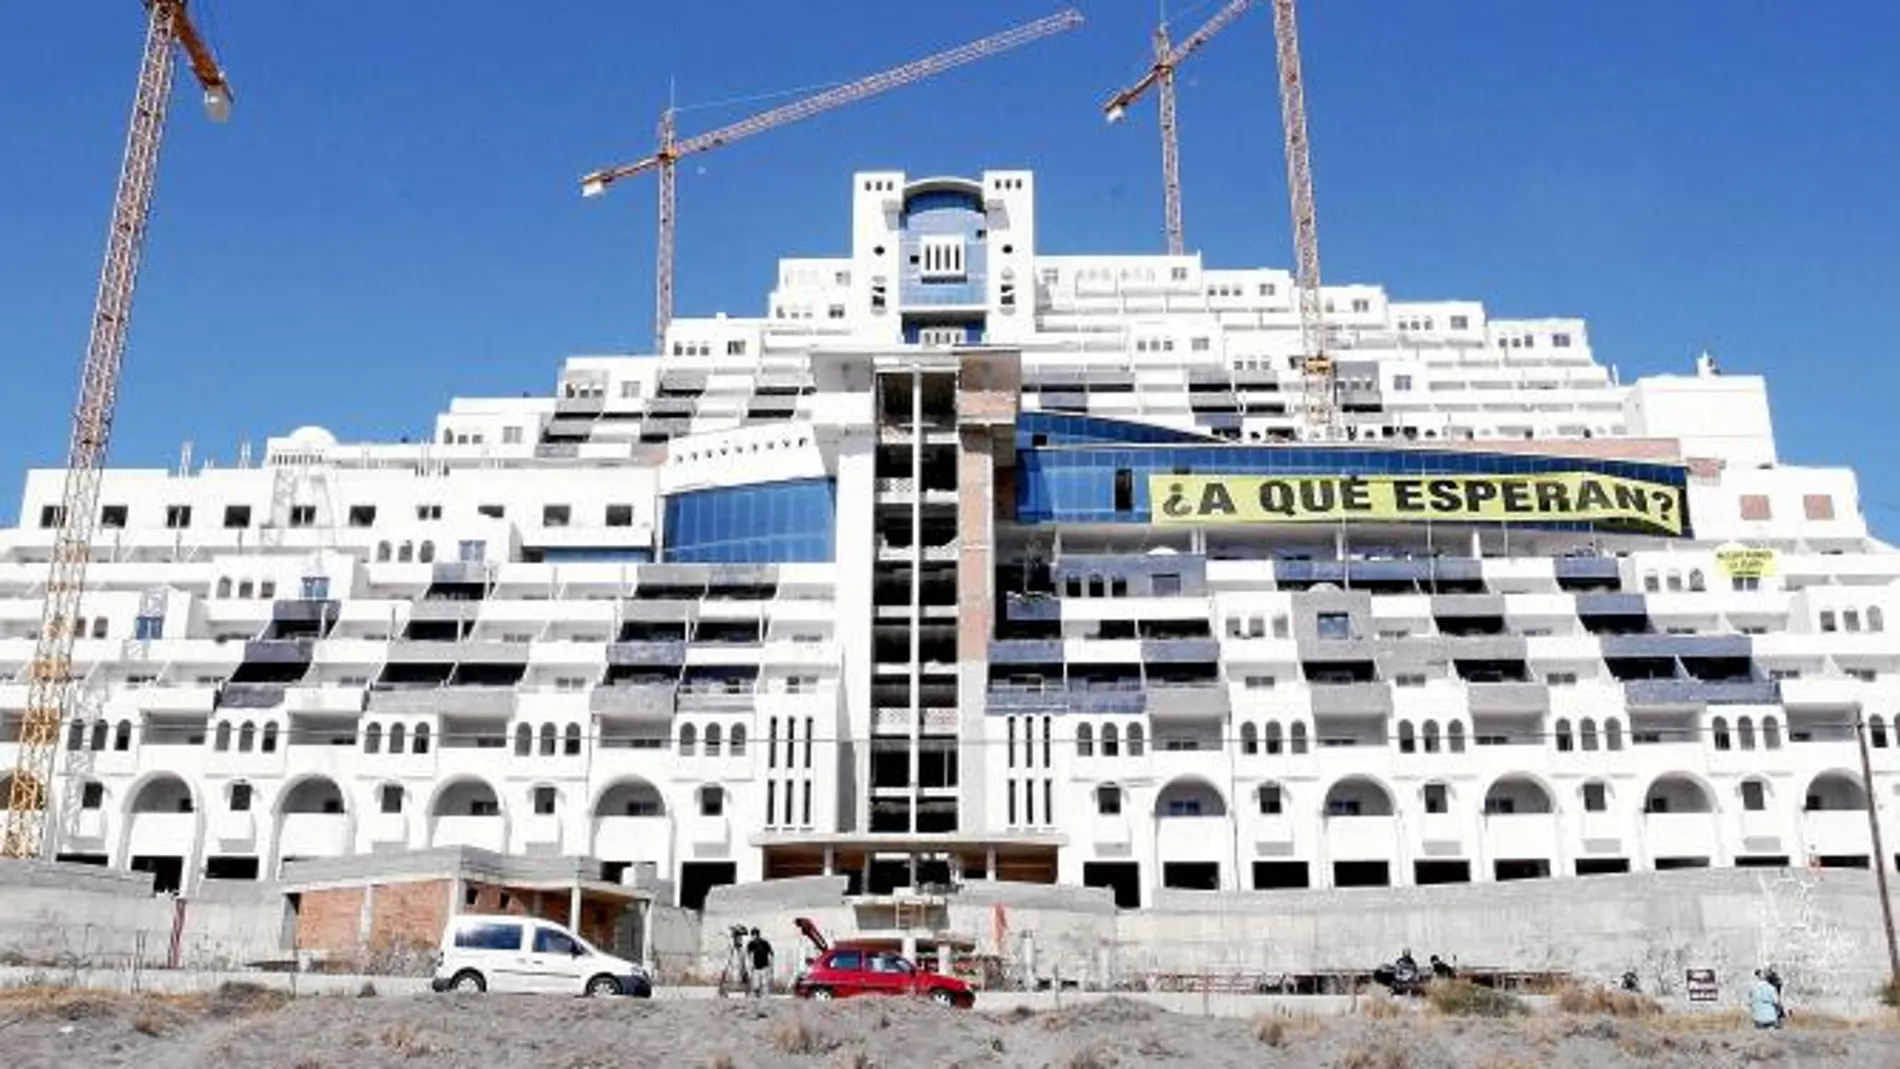 El hotel El Algarrobico tiene 20 plantas de altura y 411 habitaciones